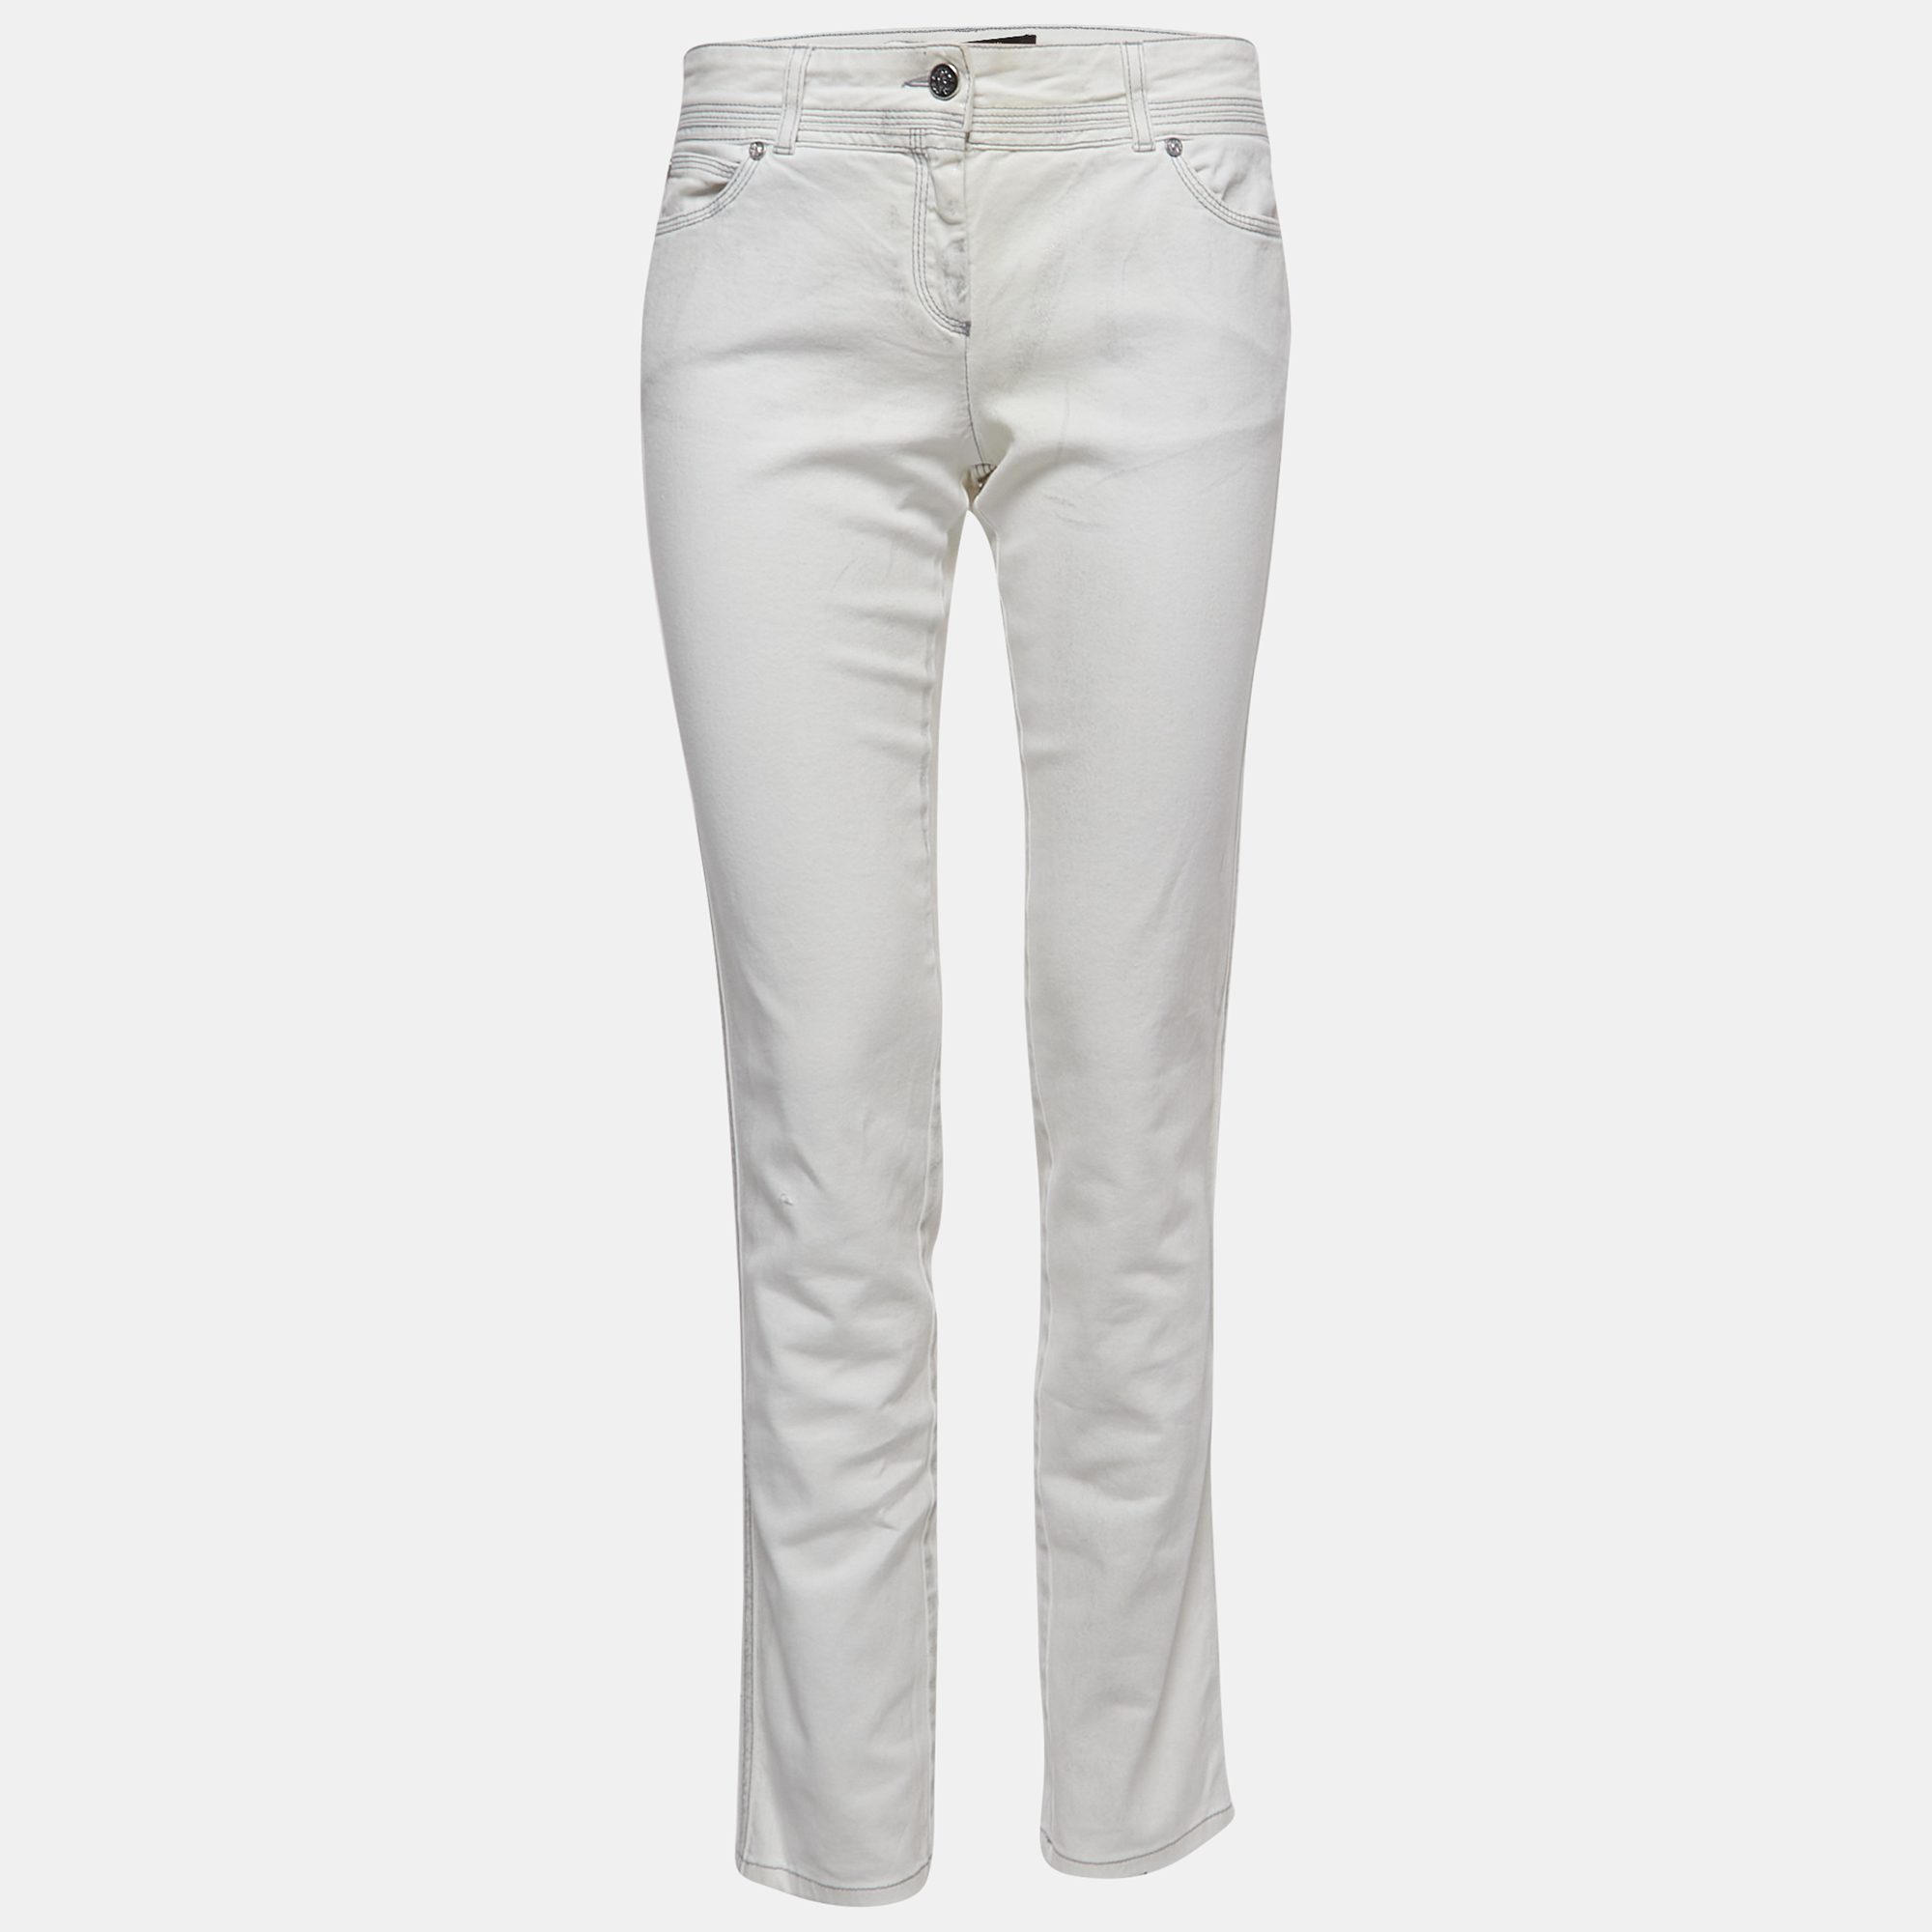 

Roberto Cavalli White Patterned Denim Stitch Detailed Jeans M Waist 30"